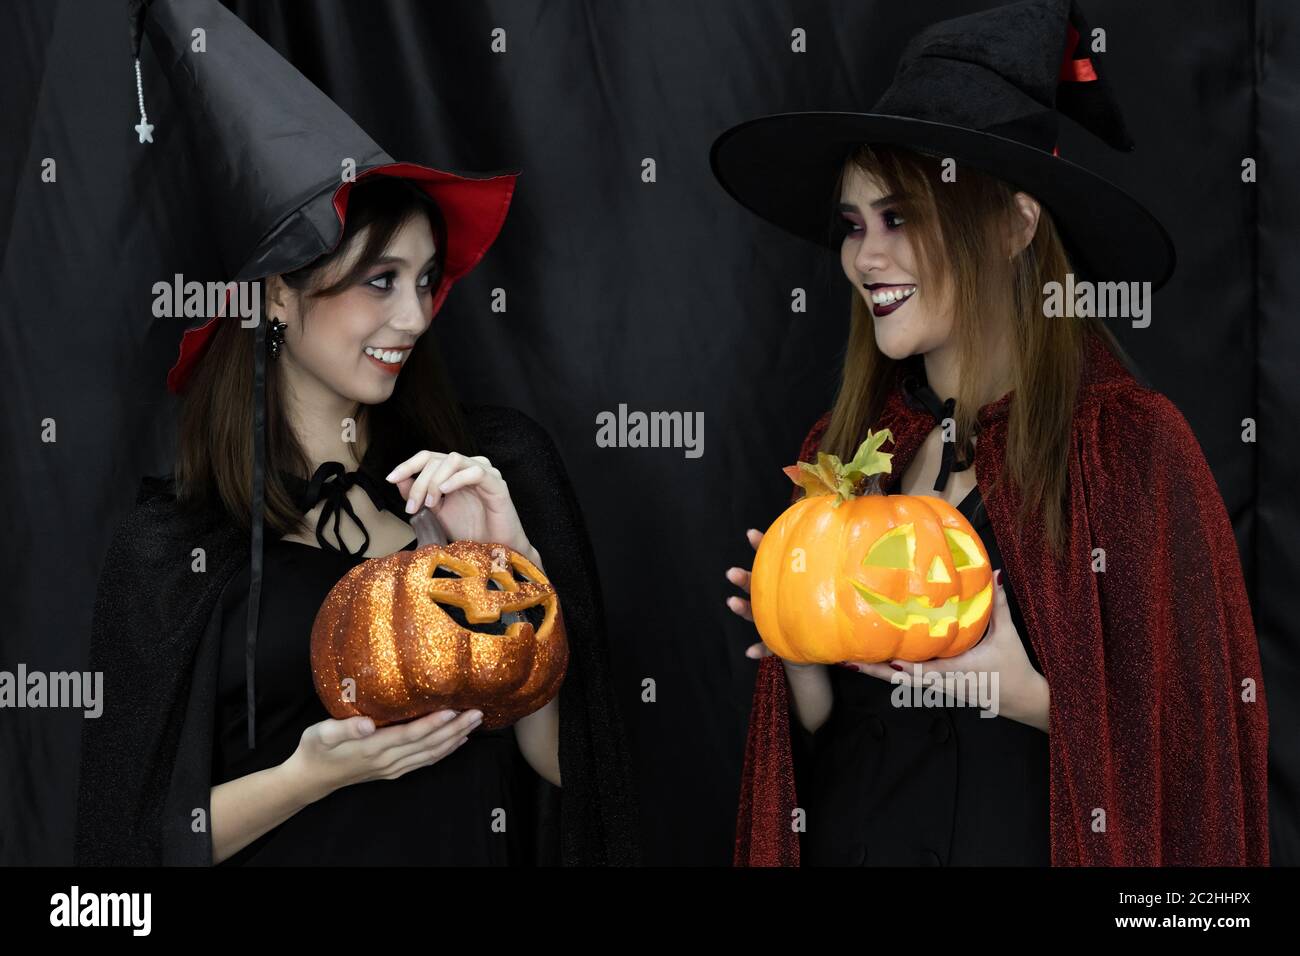 Halloween Kostüme Teenager junge Erwachsene Mädchen in Party  Stockfotografie - Alamy